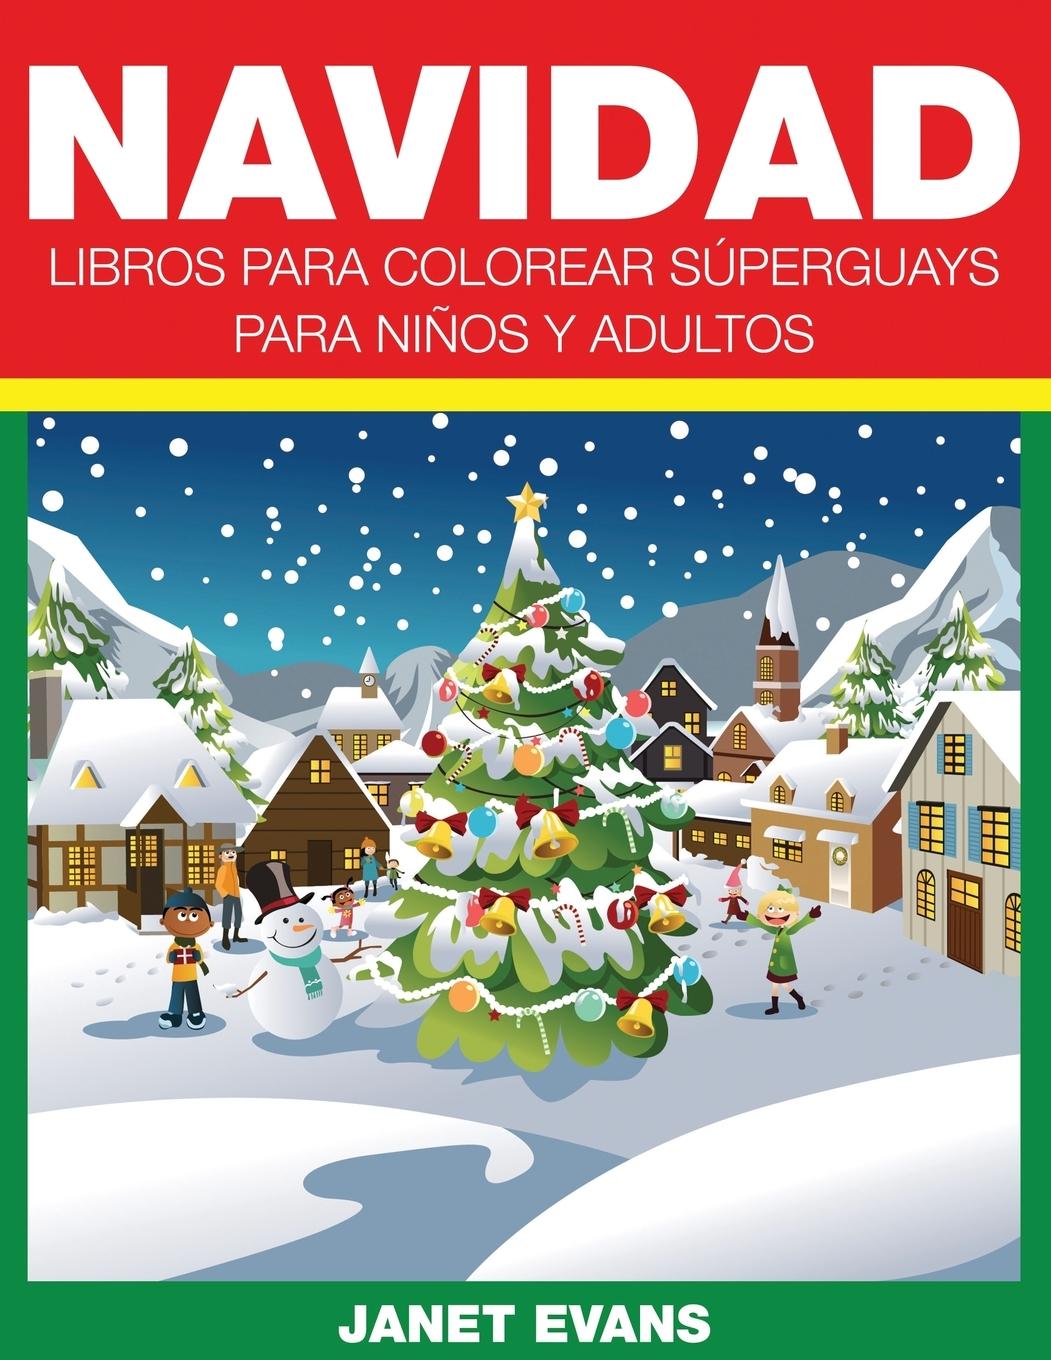 Navidad  Libros Para Colorear Superguays Para Ninos y Adultos  Janet Evans  Taschenbuch  Paperback  Spanisch  2014 - Evans, Janet